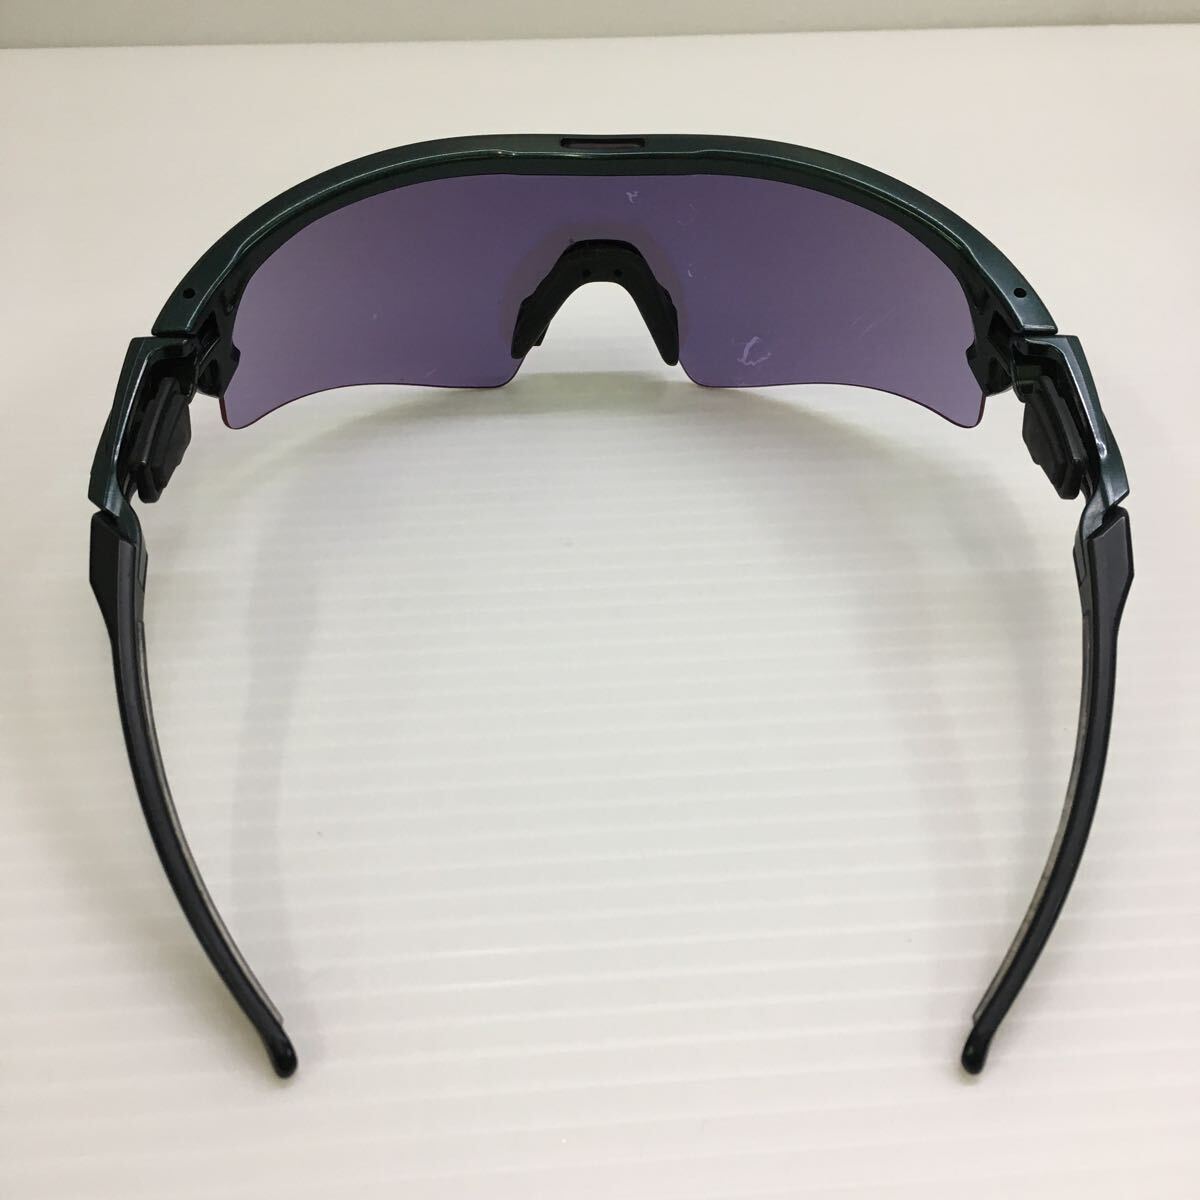 H-3827 ... SWANS ULTRA LENS  солнцезащитные очки   подержанный товар  